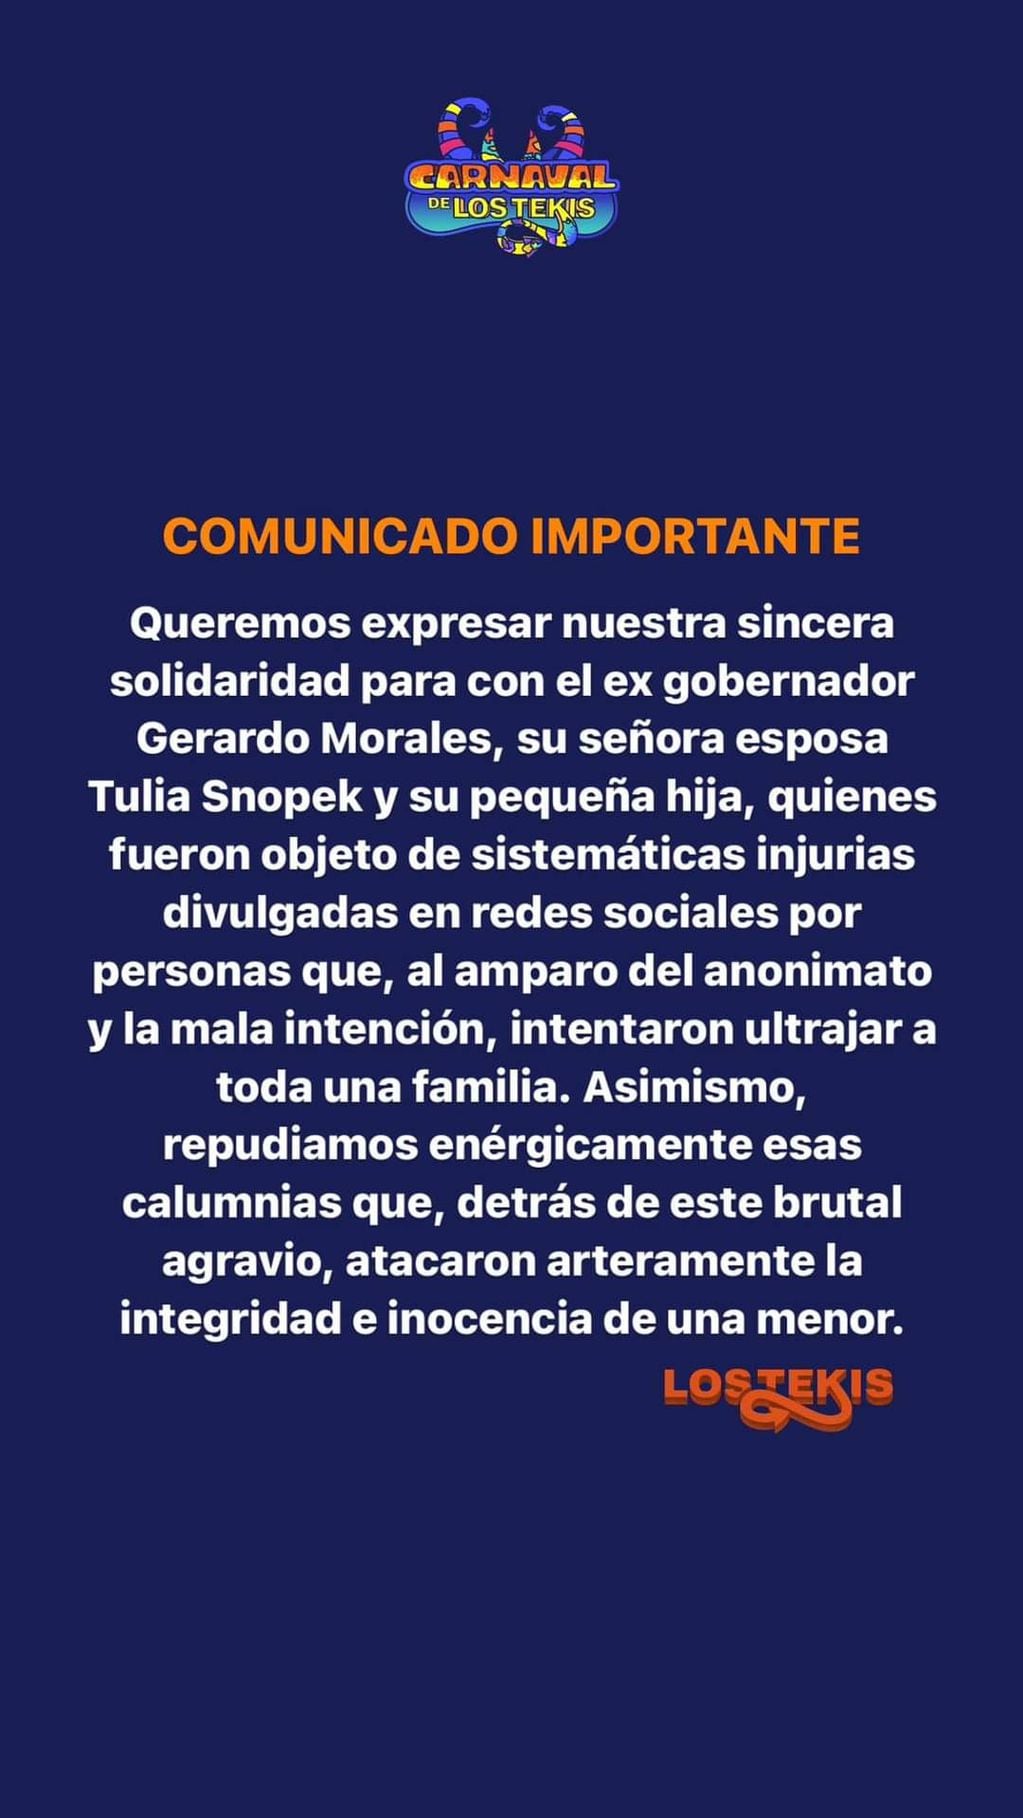 Comunicado oficial de Los Tekis por el falso rumor con la esposa de Gerardo Morales (IG)